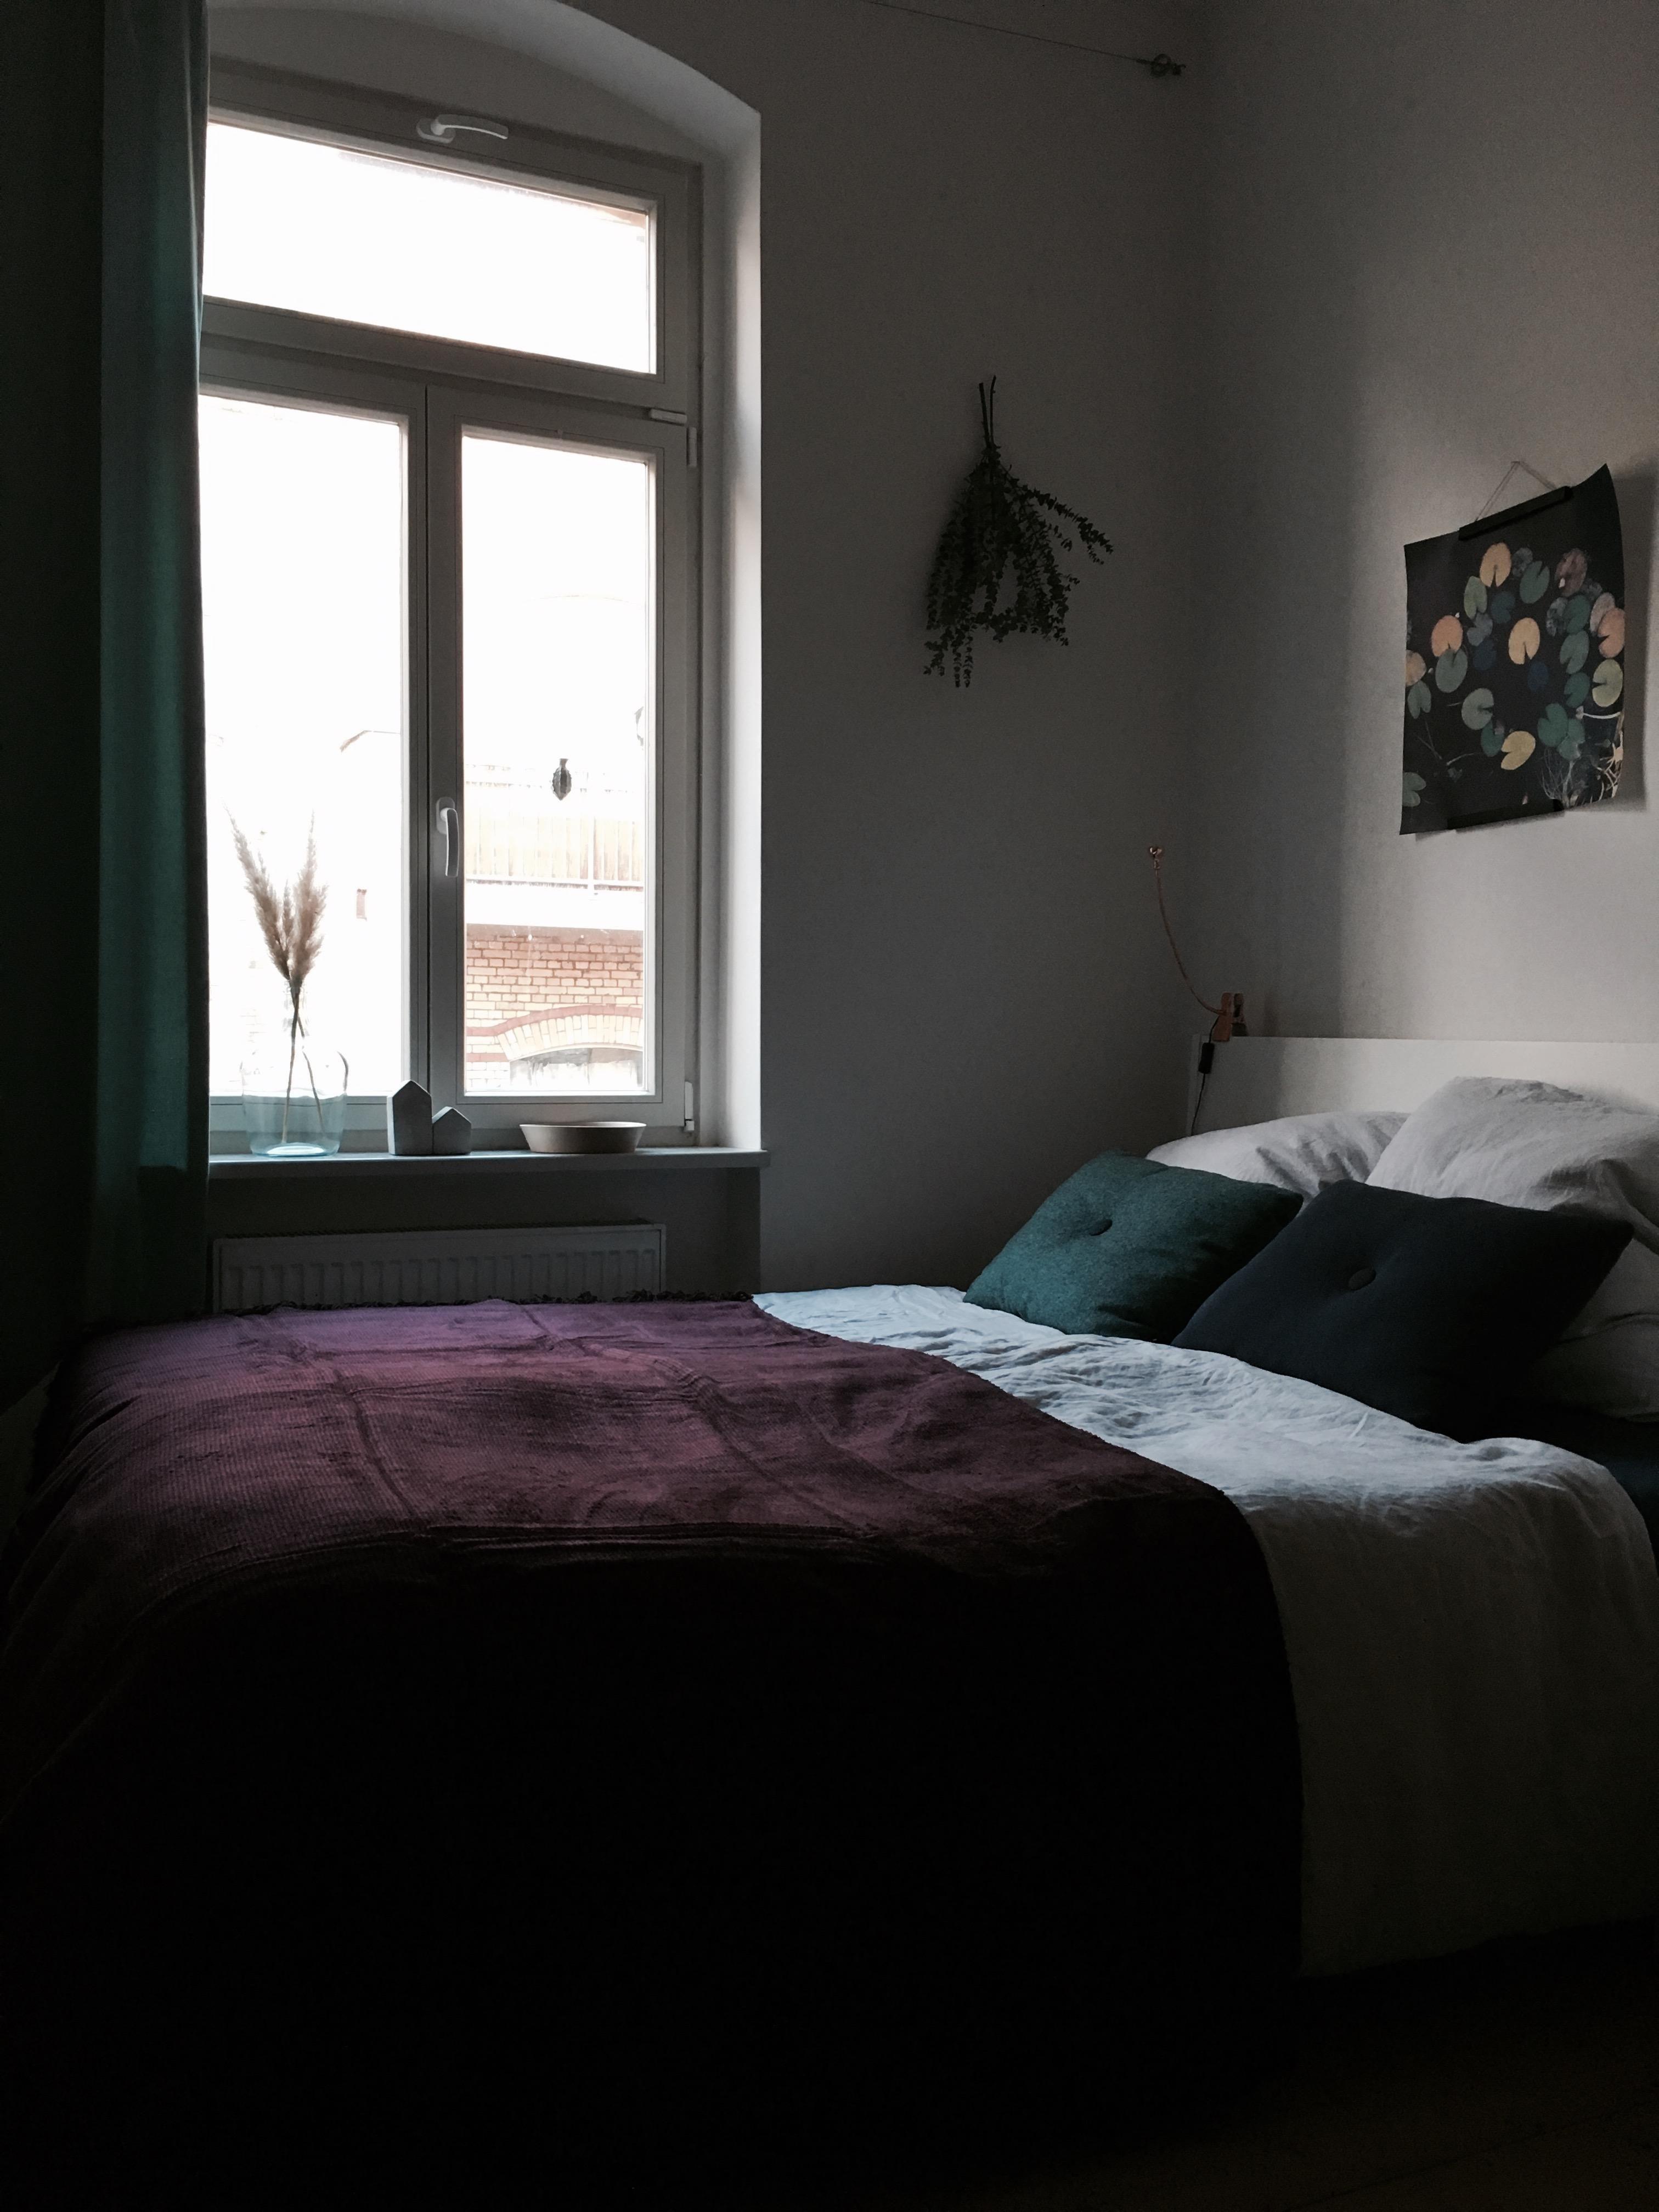 Sunday in bed... #schlafzimmer #kuscheldecke #kissen #living #leinen #bettwäsche #print